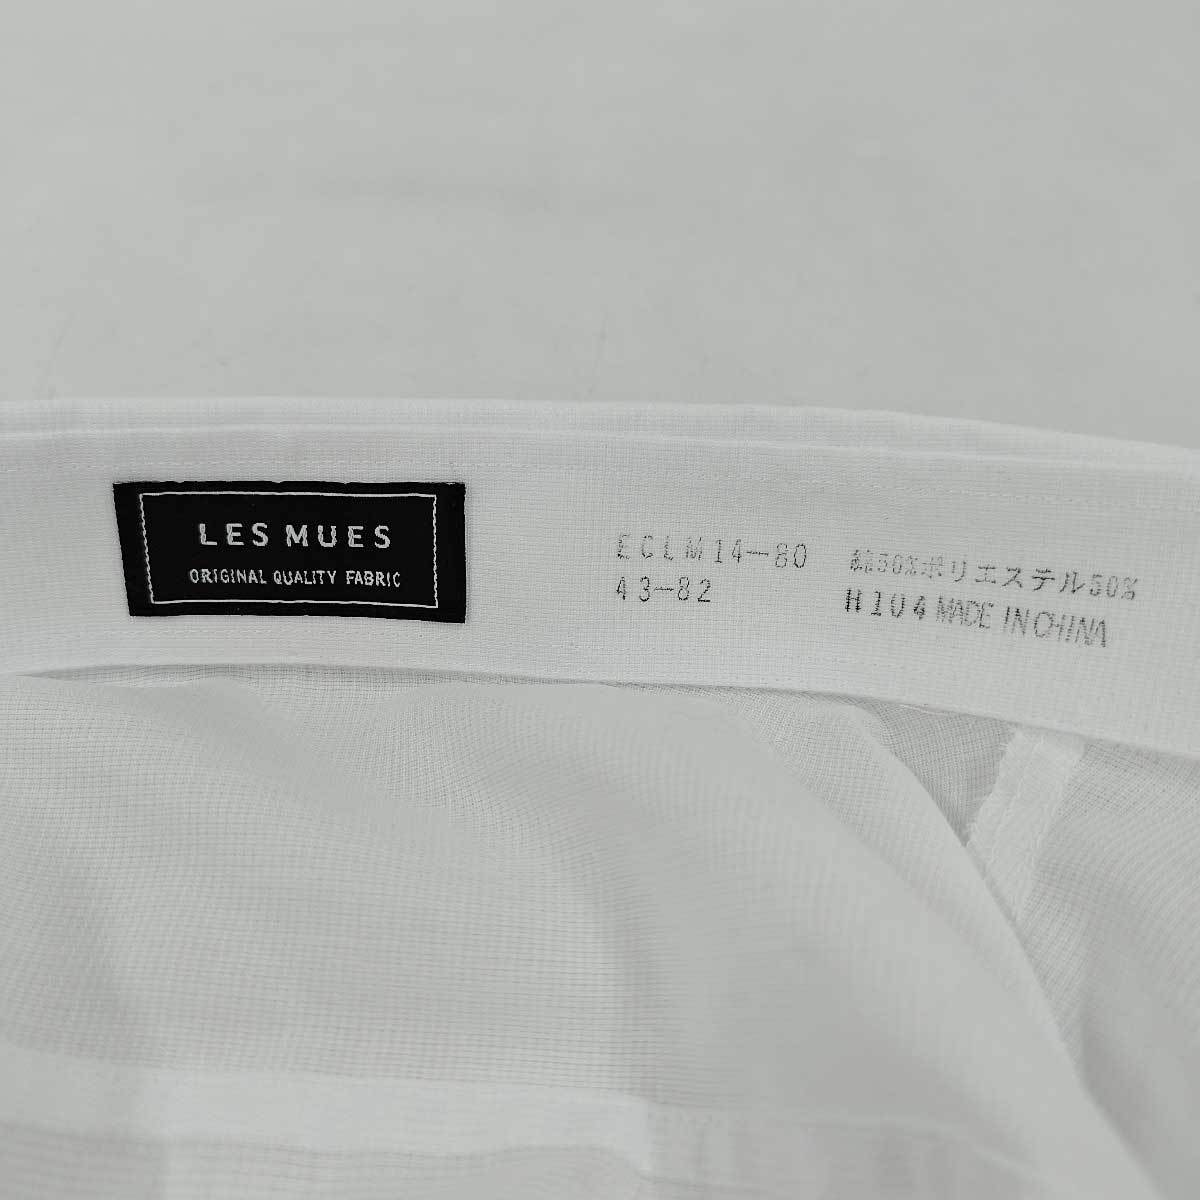 【中古】LES MUES ワイシャツ 43-82 ホワイト ECLM14-80 メンズ_画像3